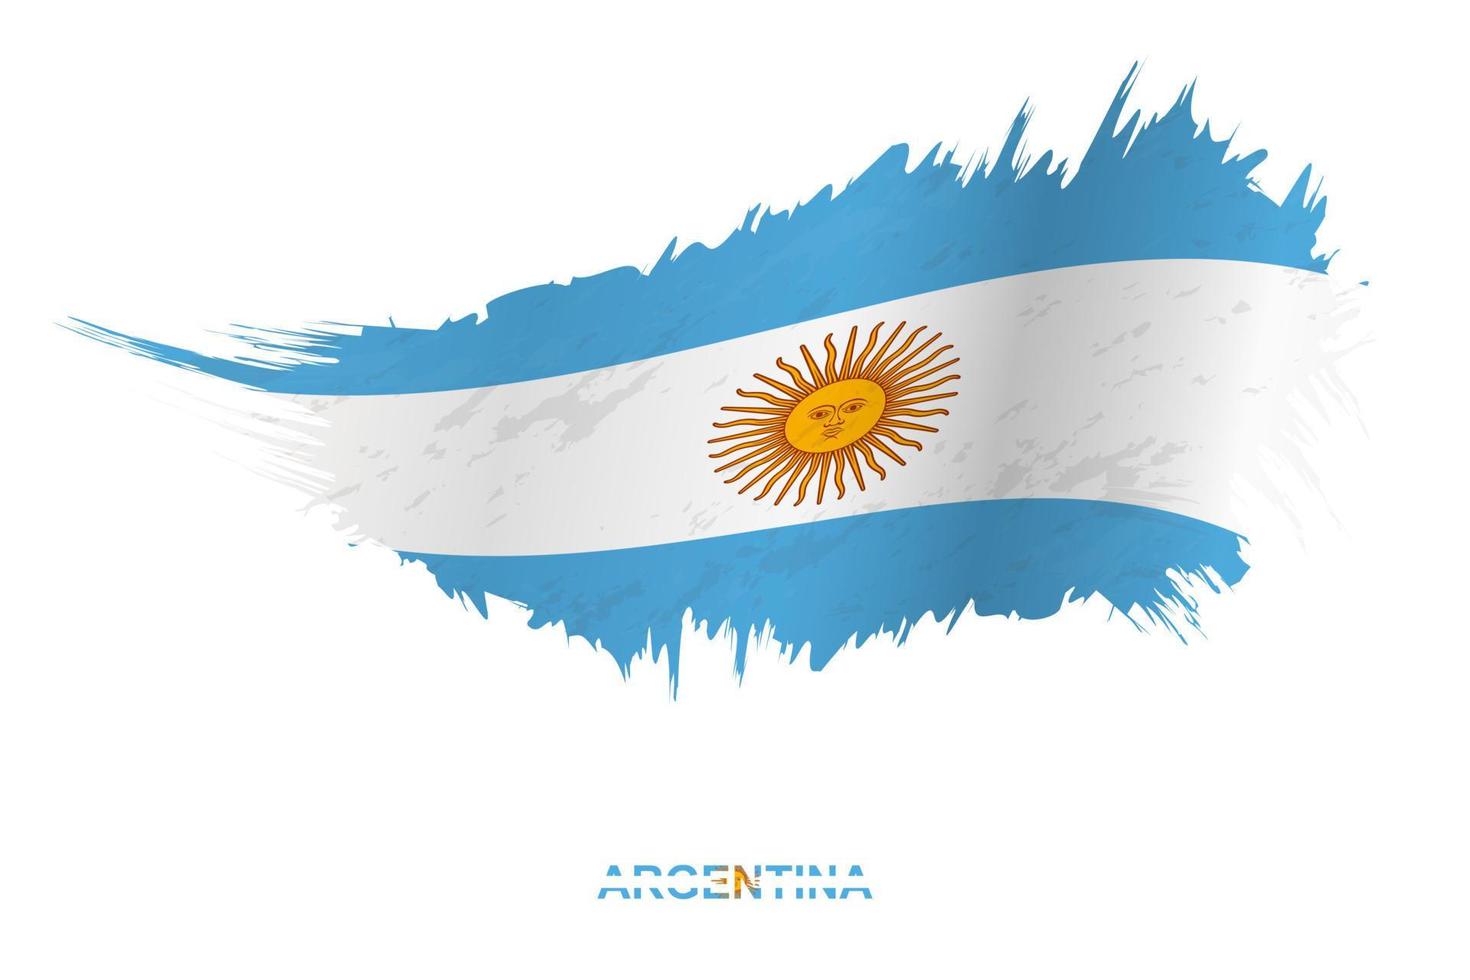 bandera de argentina en estilo grunge con efecto ondulante. vector